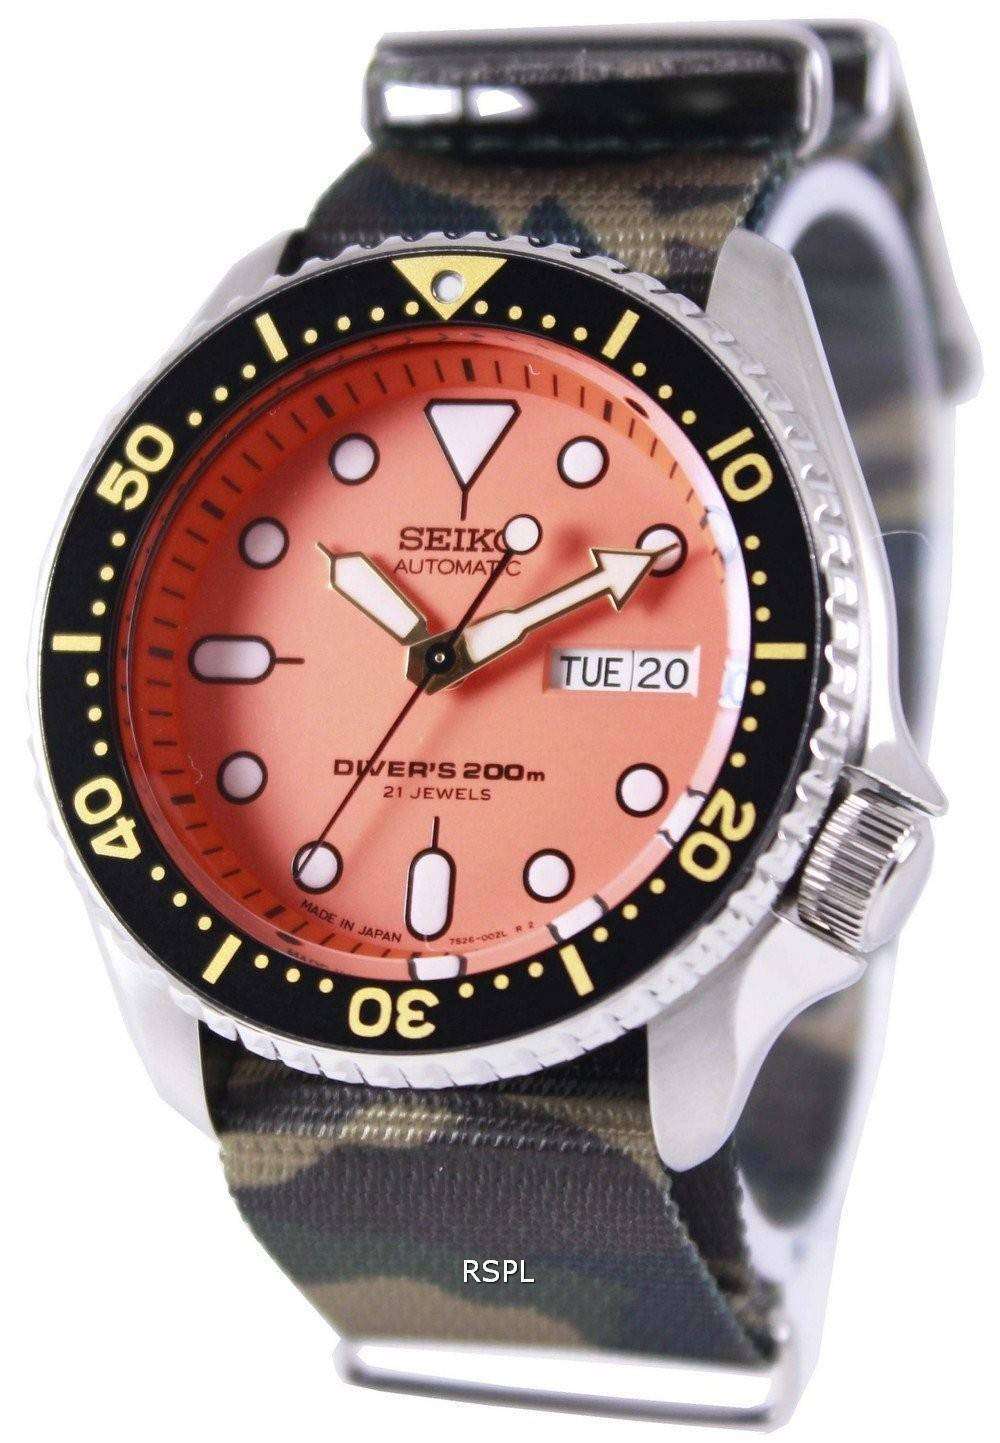 Seiko Automatic Diver's 200M Army NATO Strap SKX011J1-NATO5 Men's Watch -  